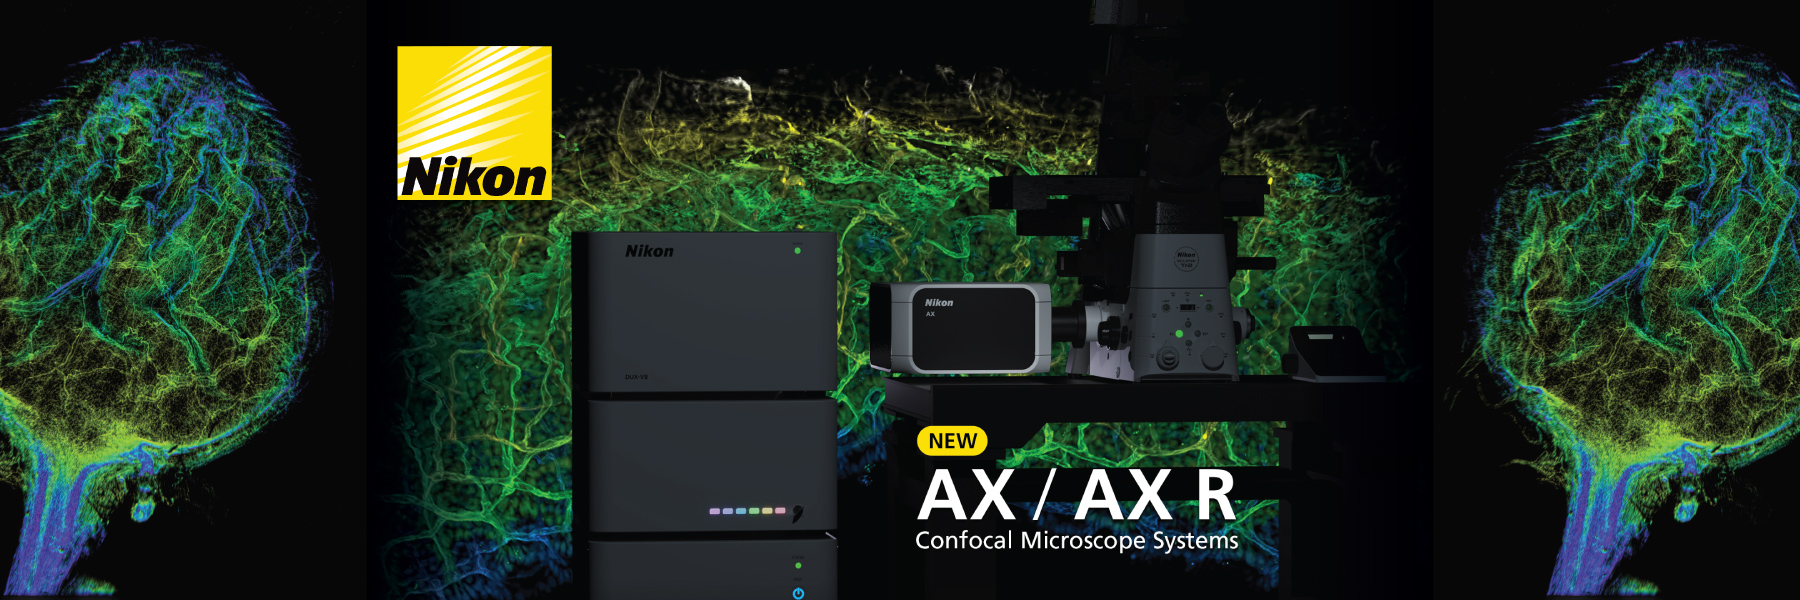 Nikon AX AX R Confocal Microscopes